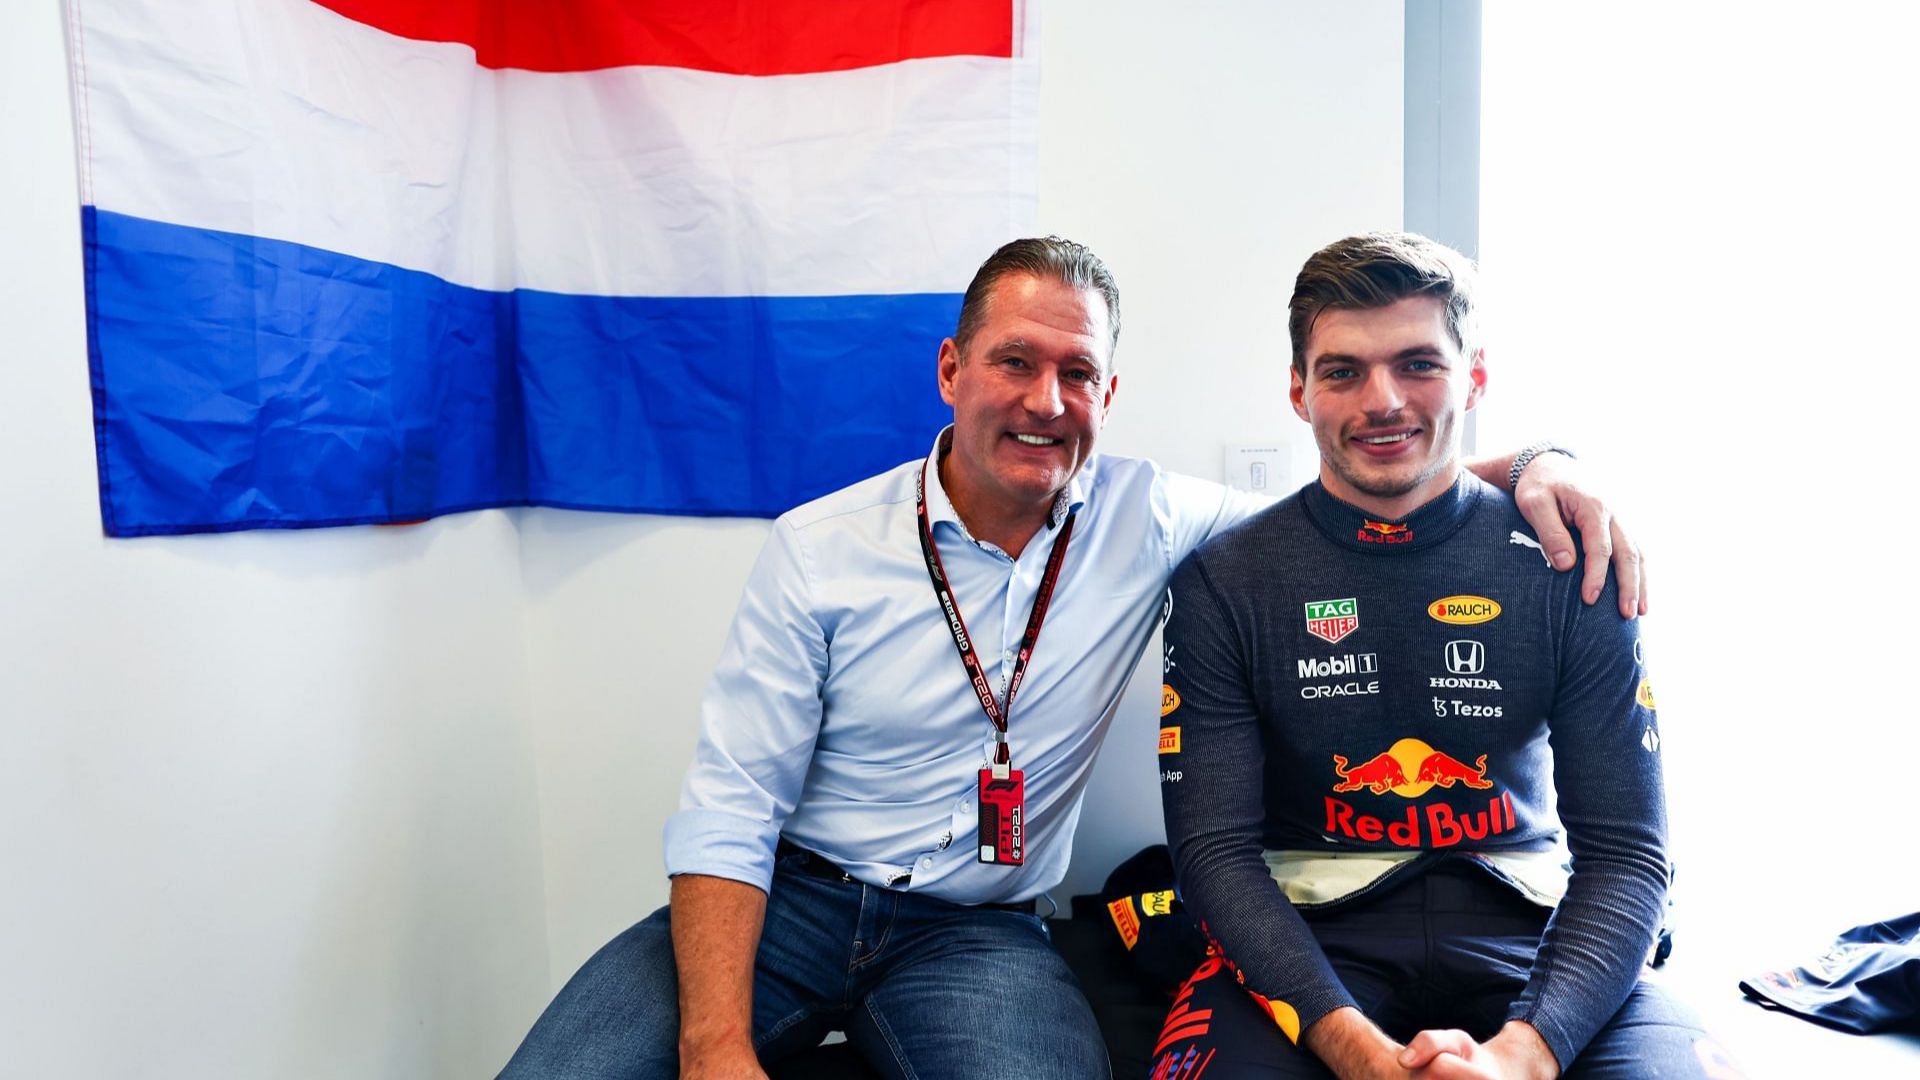 «У меня не было такого успеха», - отец Макса Ферстаппена, Йос, сравнивает гоночную карьеру сына с его собственной.